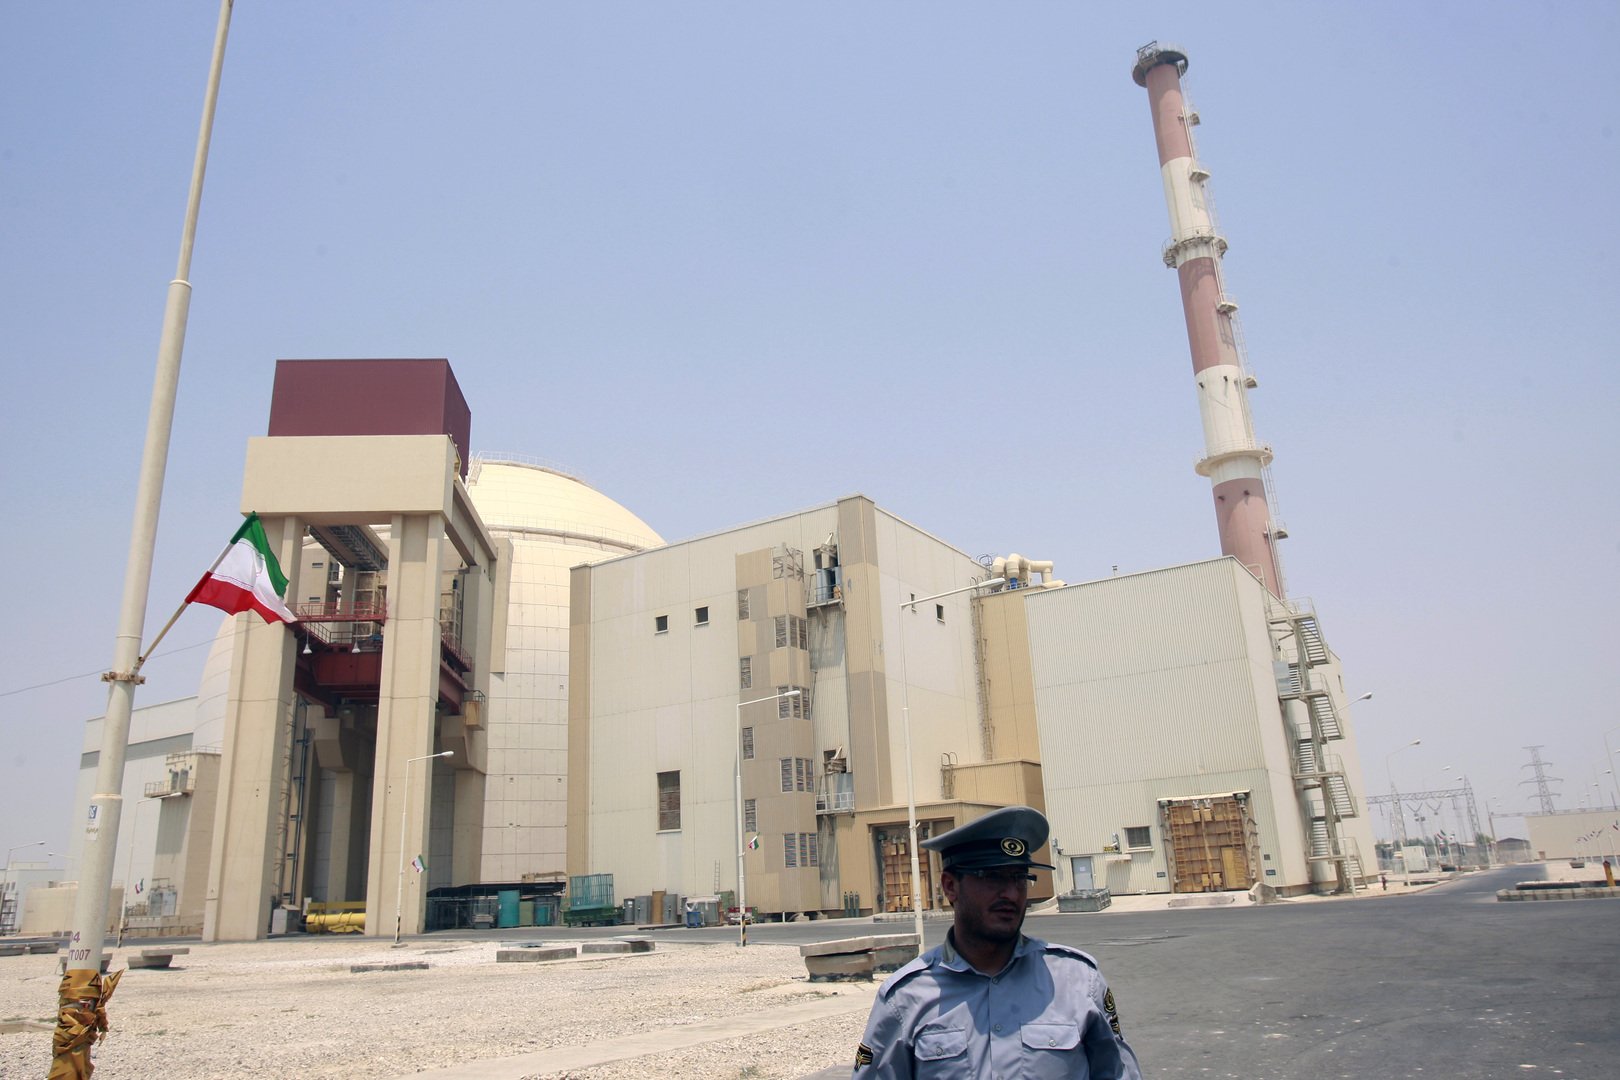 إيران قد تمنع الوكالة الدولية من دخول منشآتها النووية